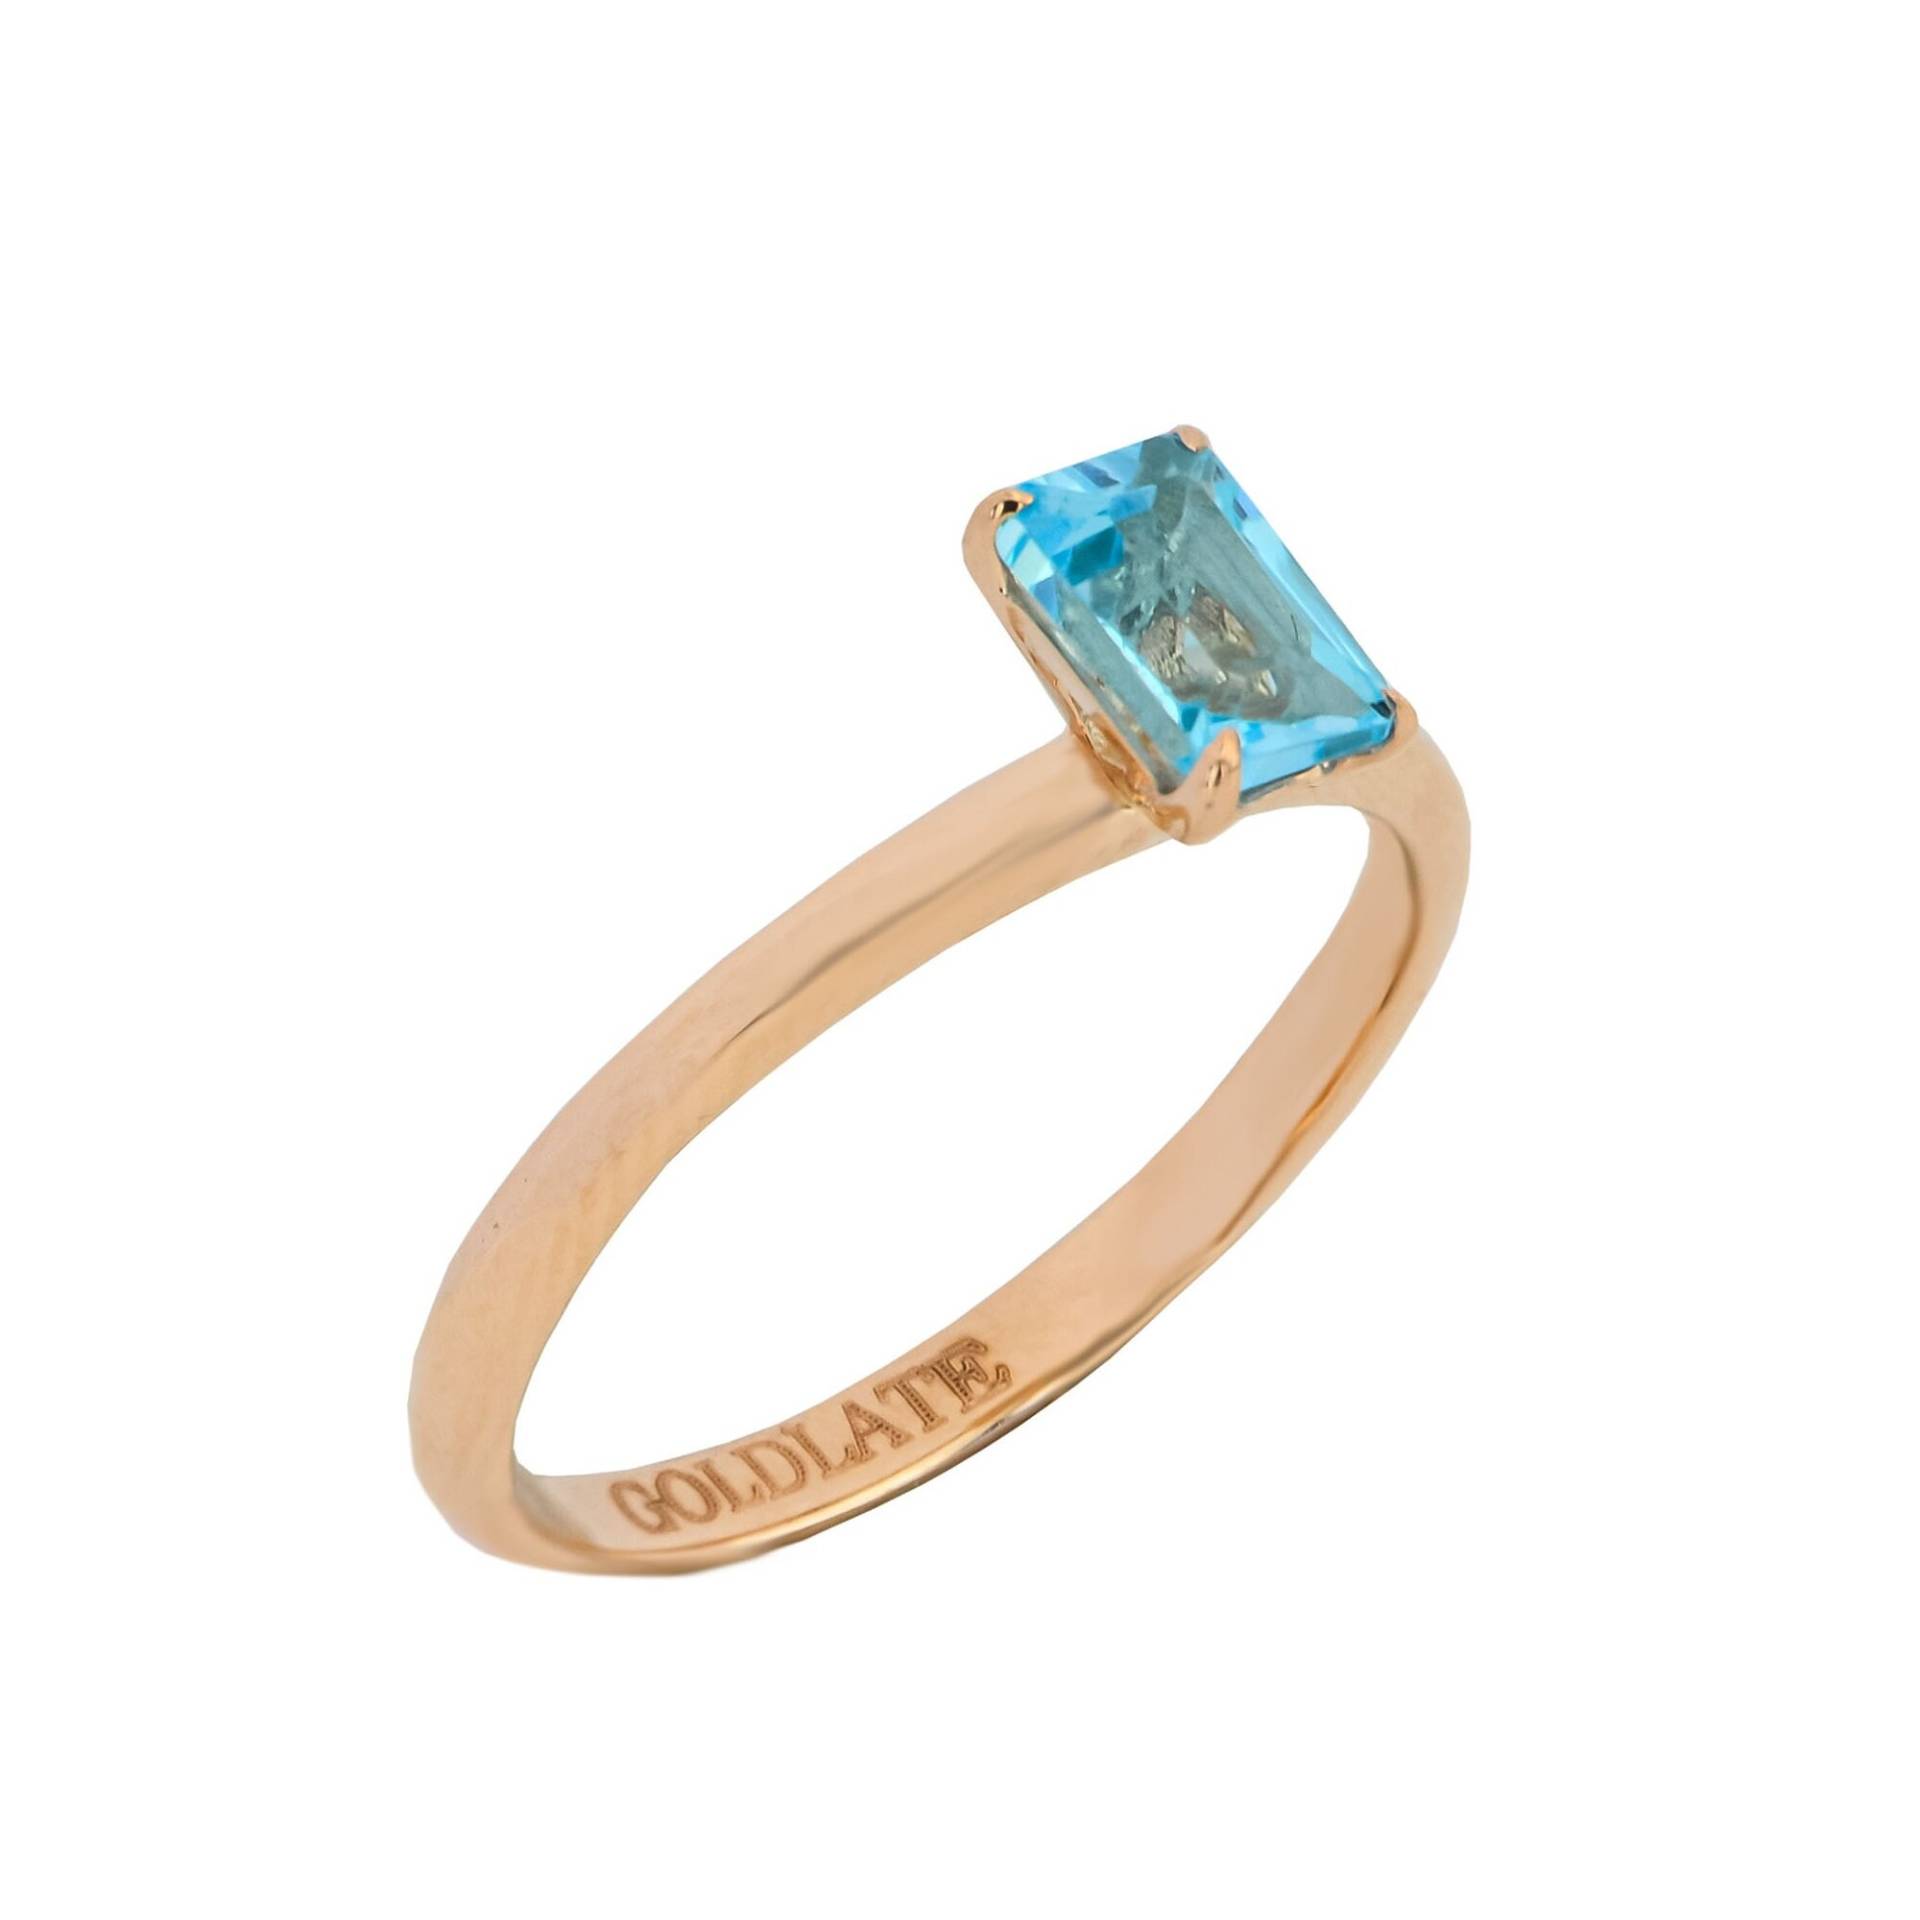 14K Solid Rose Gold Blautopas Band Ring, Blau Zierliche Topas Prinzessin Cut Blue Topaz Blautopas Ehering, Geschenk Ring von GoldLateJewellery